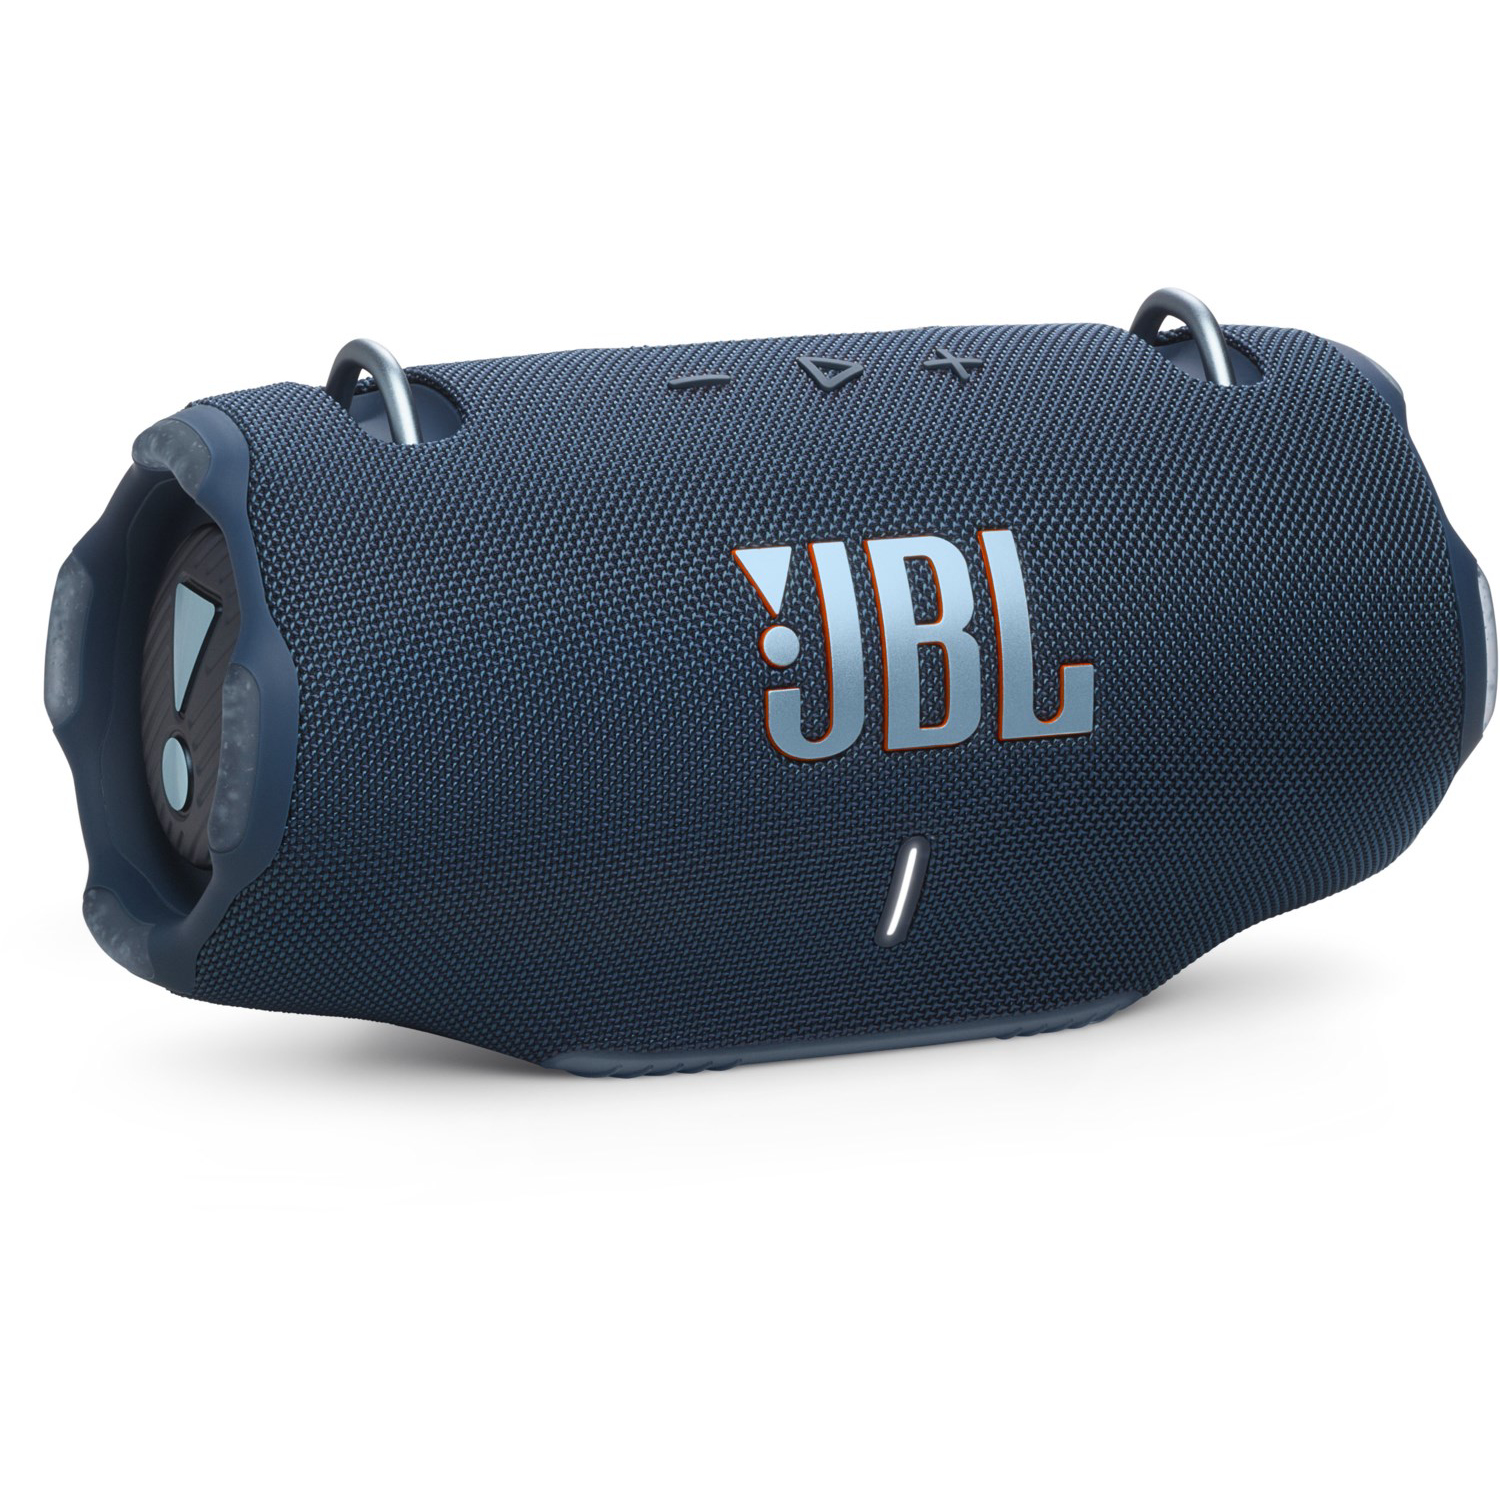 JBL Xtreme 4 blau spritzwasserfest